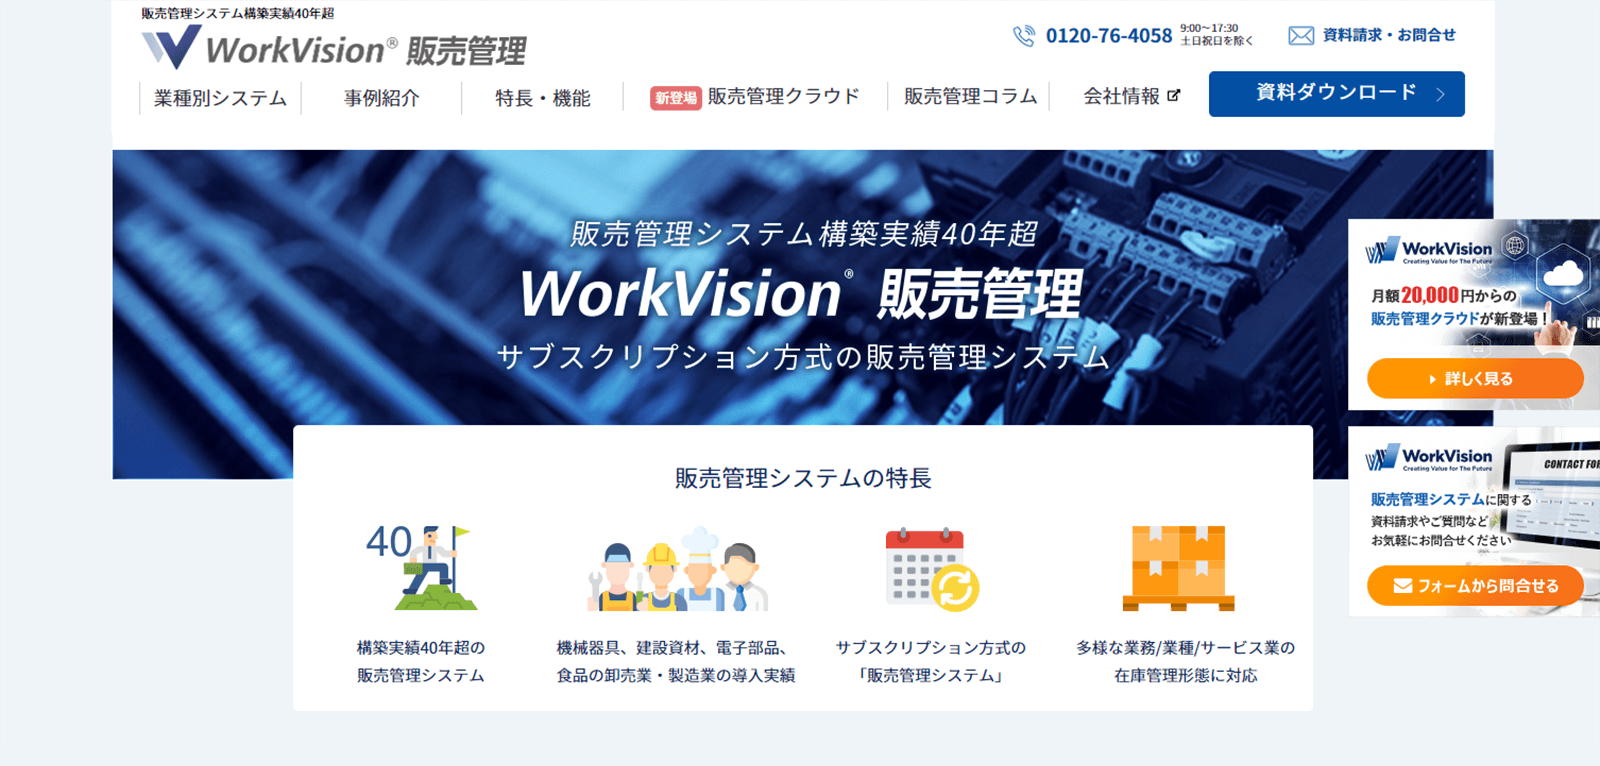 WorkVision販売管理のwebサイト